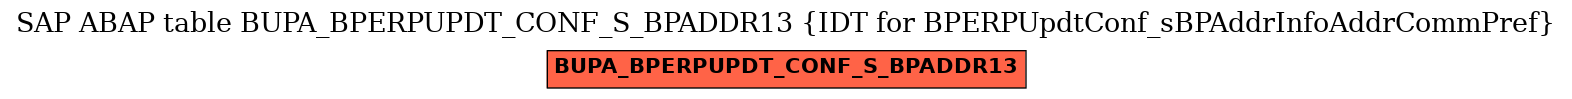 E-R Diagram for table BUPA_BPERPUPDT_CONF_S_BPADDR13 (IDT for BPERPUpdtConf_sBPAddrInfoAddrCommPref)